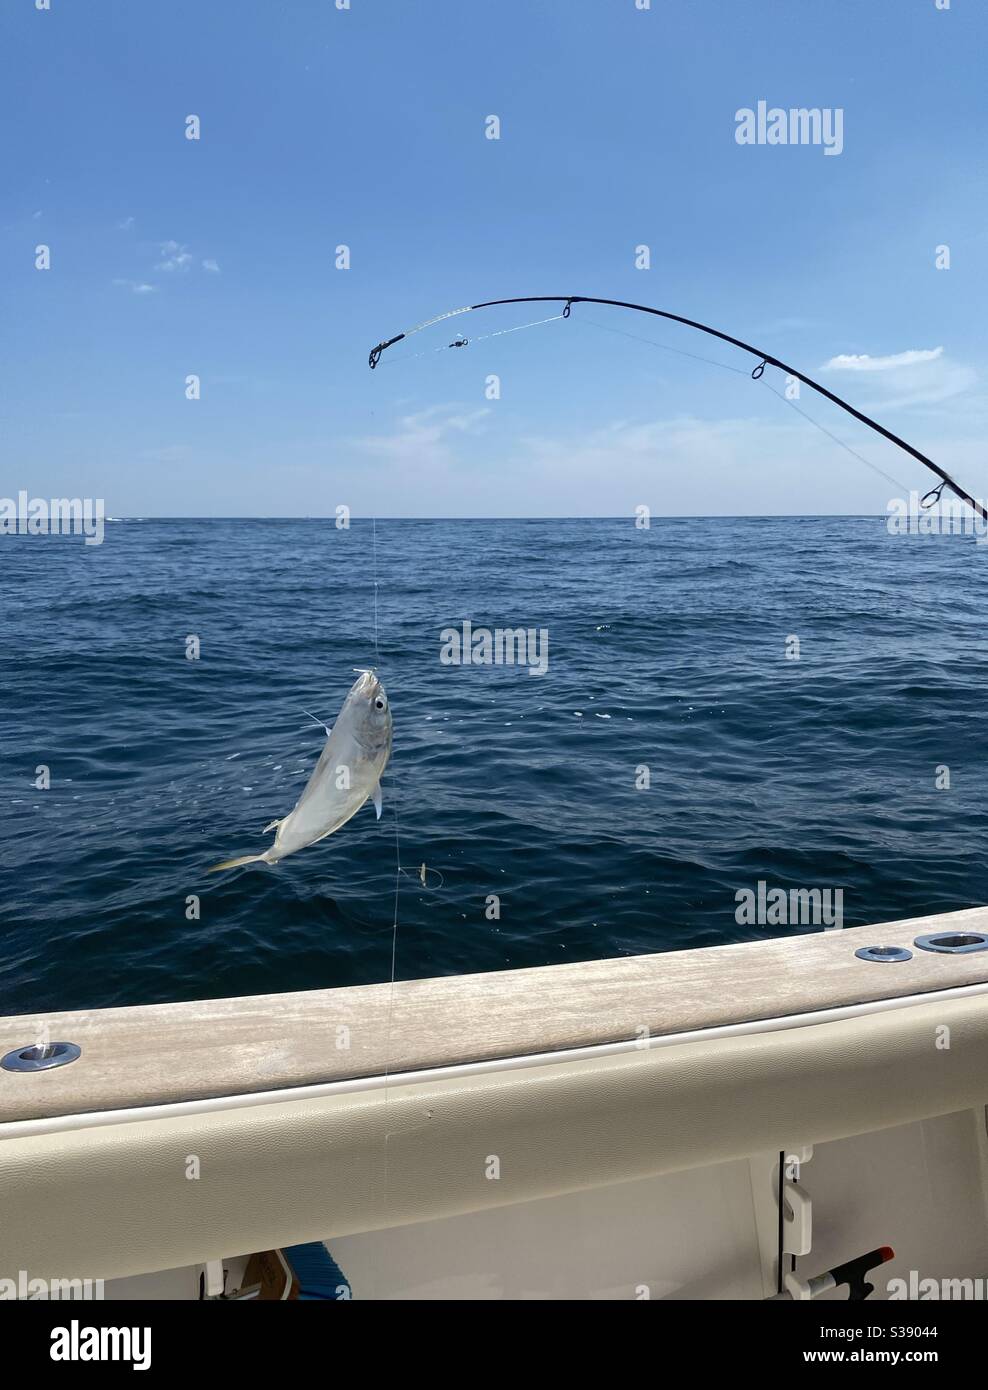 Pesca en mexico fotografías e imágenes de alta resolución - Página 5 - Alamy